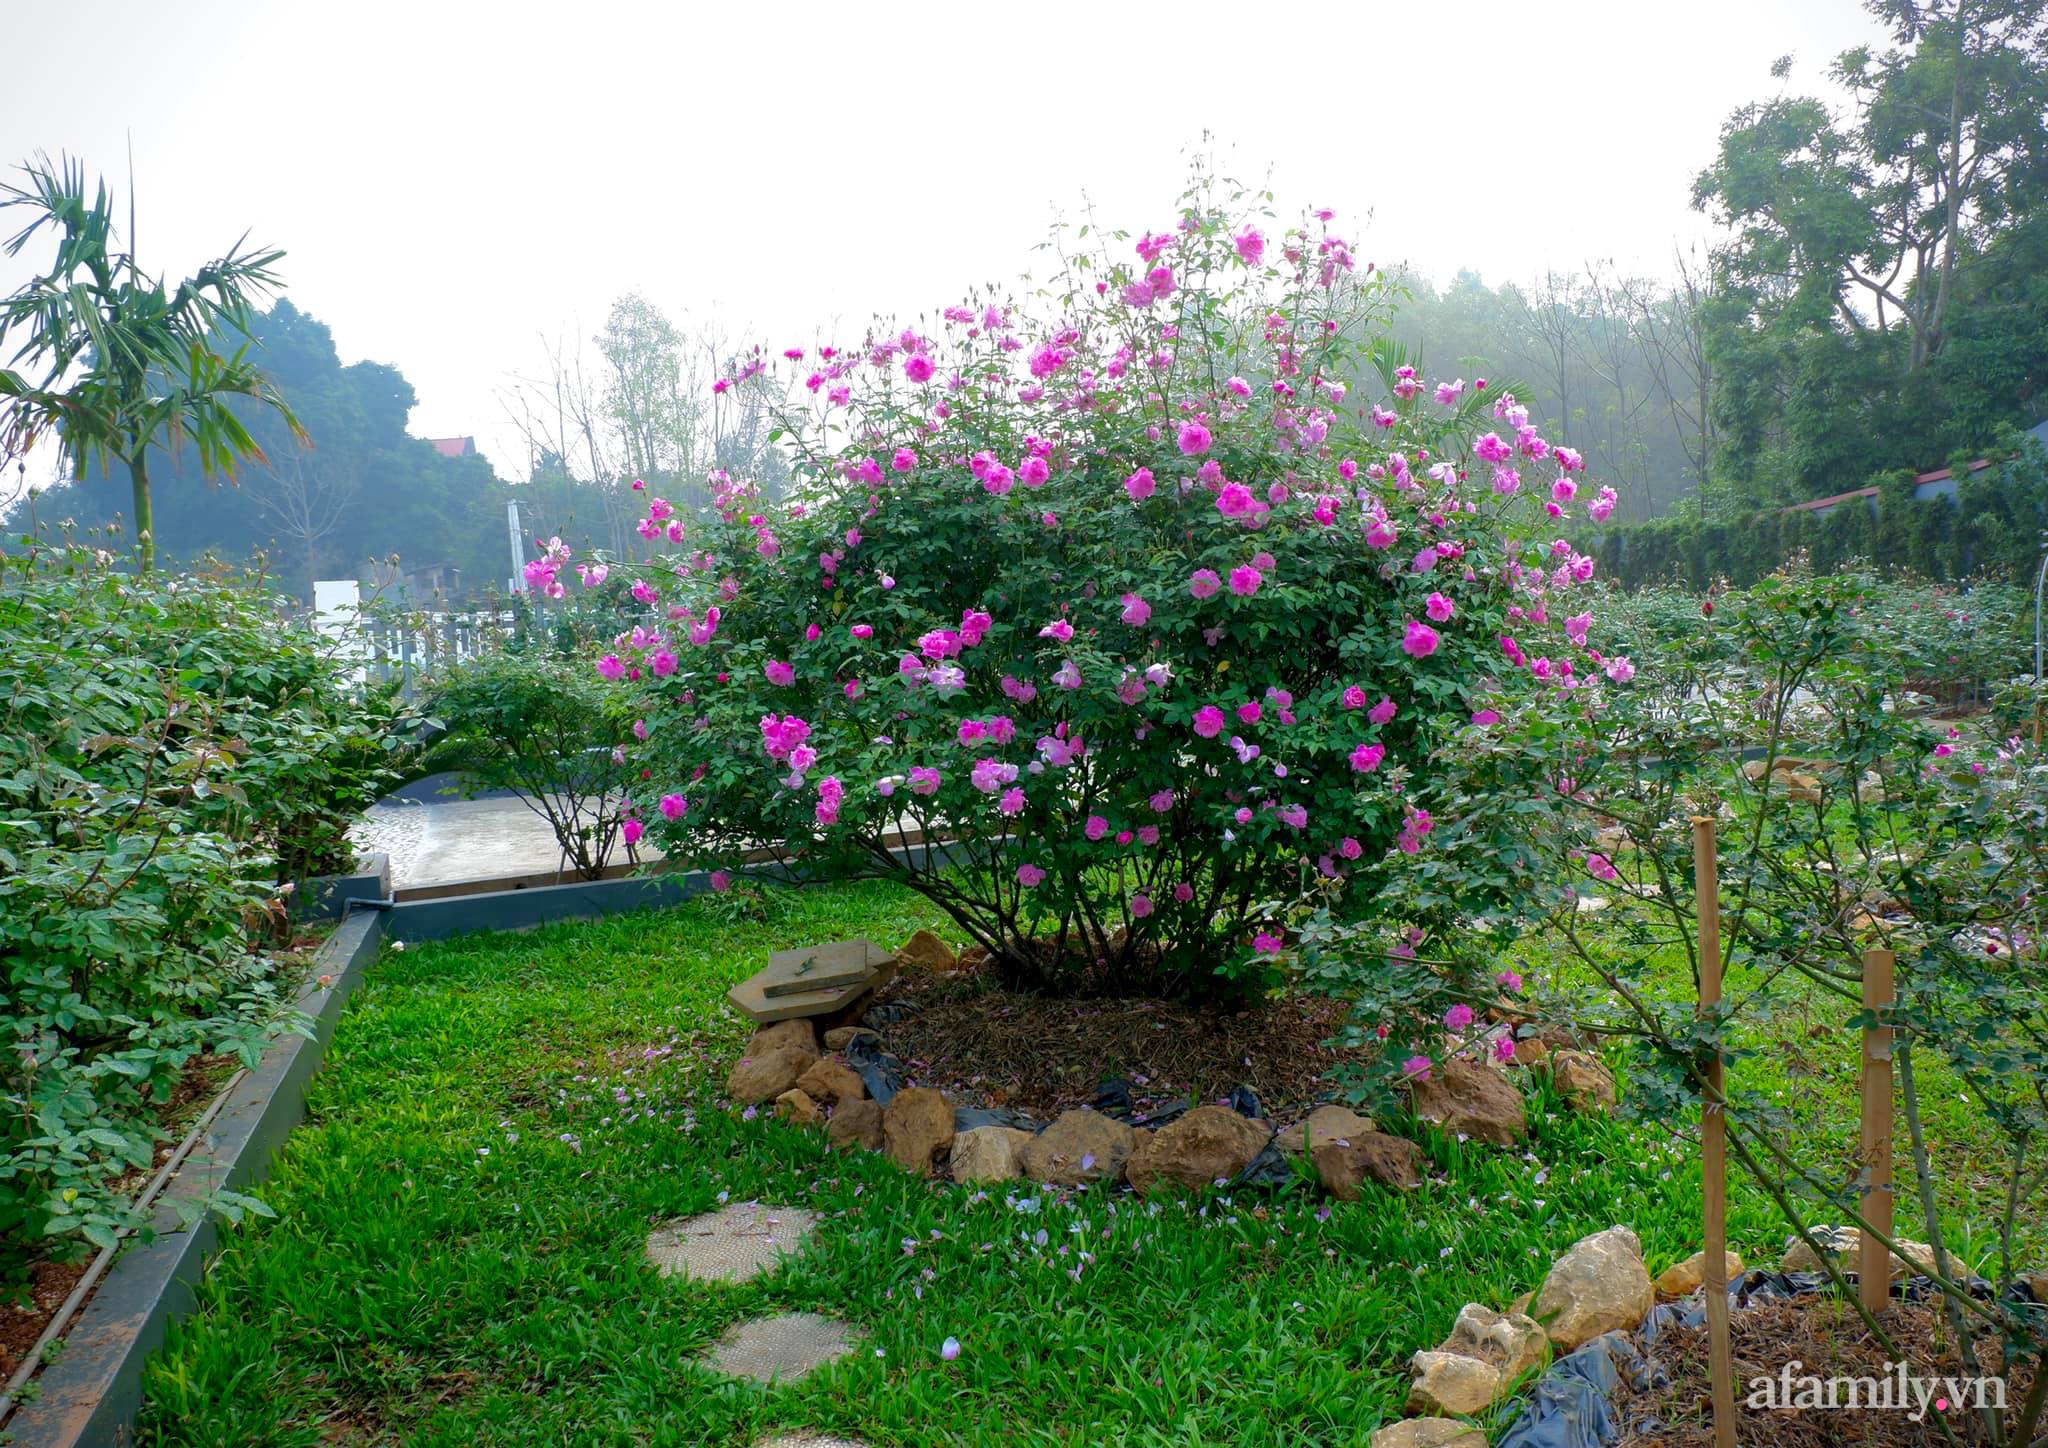 Cuộc sống an yên giữa đồi núi trong ngôi nhà hoa hồng quanh năm tỏa hương sắc của gia đình ở Ba Vì - Ảnh 8.